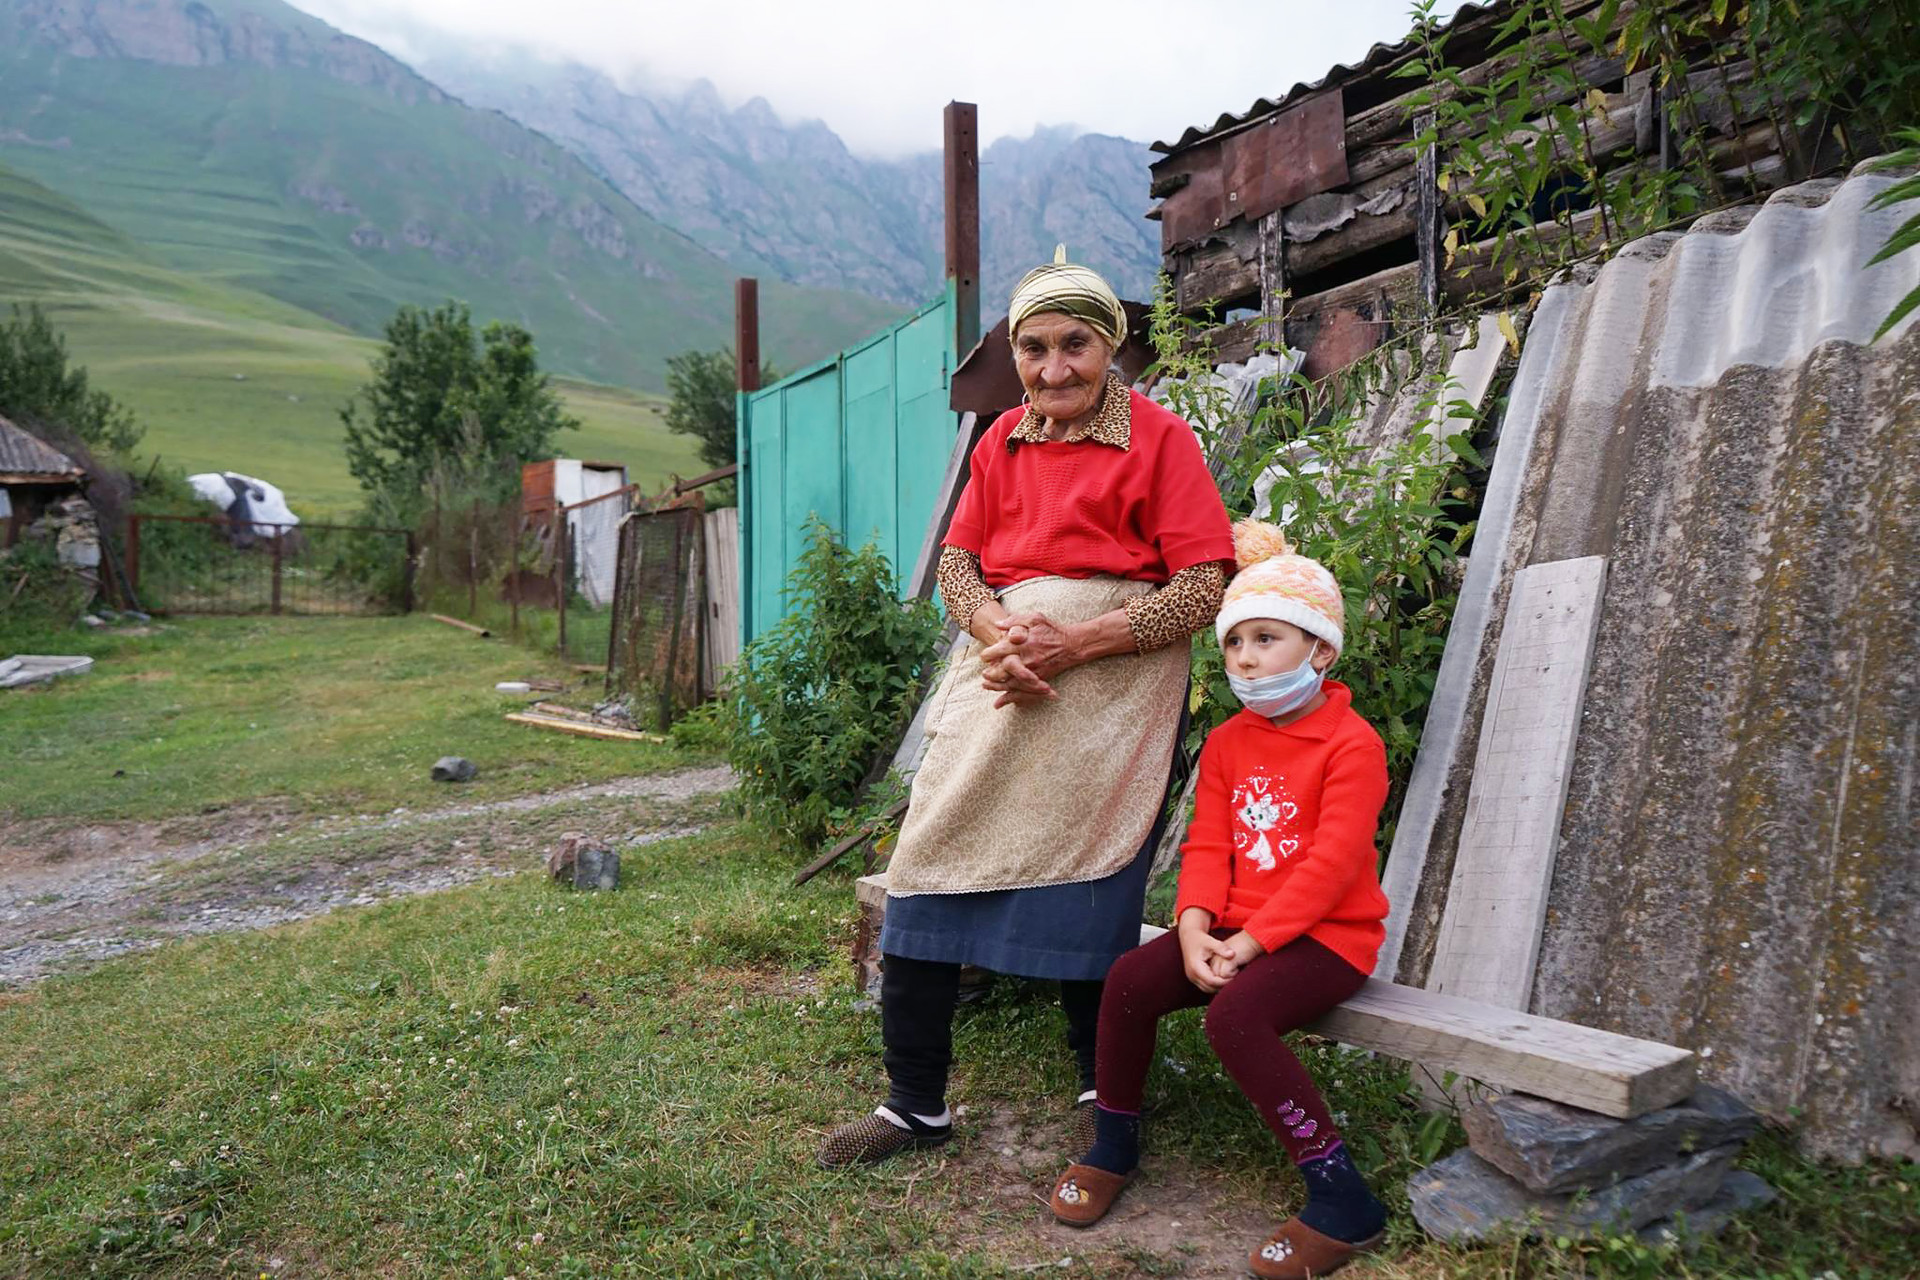 Zara e la sua bisnipote Jessica vivono nel piccolo villaggio di Mairamikau nella gola di Karmadon, nella regione russa dell’Ossezia settentrionale-Alania. Zara ha vissuto qui tutta la sua vita ed è felice. Si dice che il Caucaso sia la regione del mondo con la più alta concentrazione di centenari